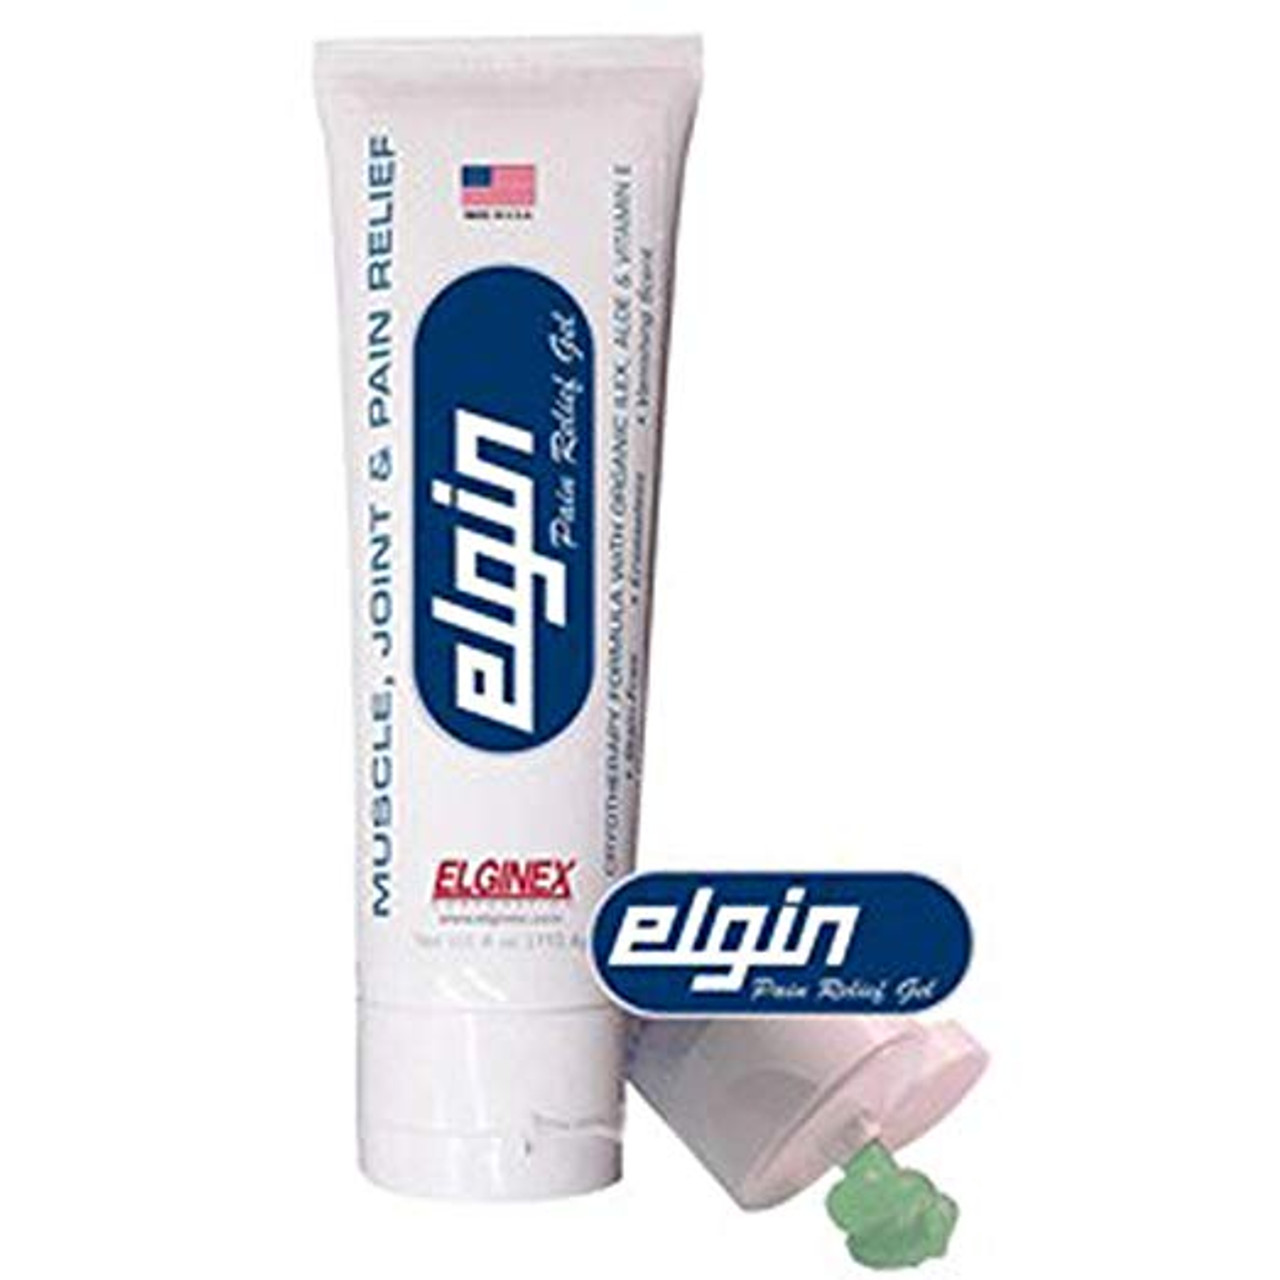 Pain Relief Cream: 4 oz, Tube